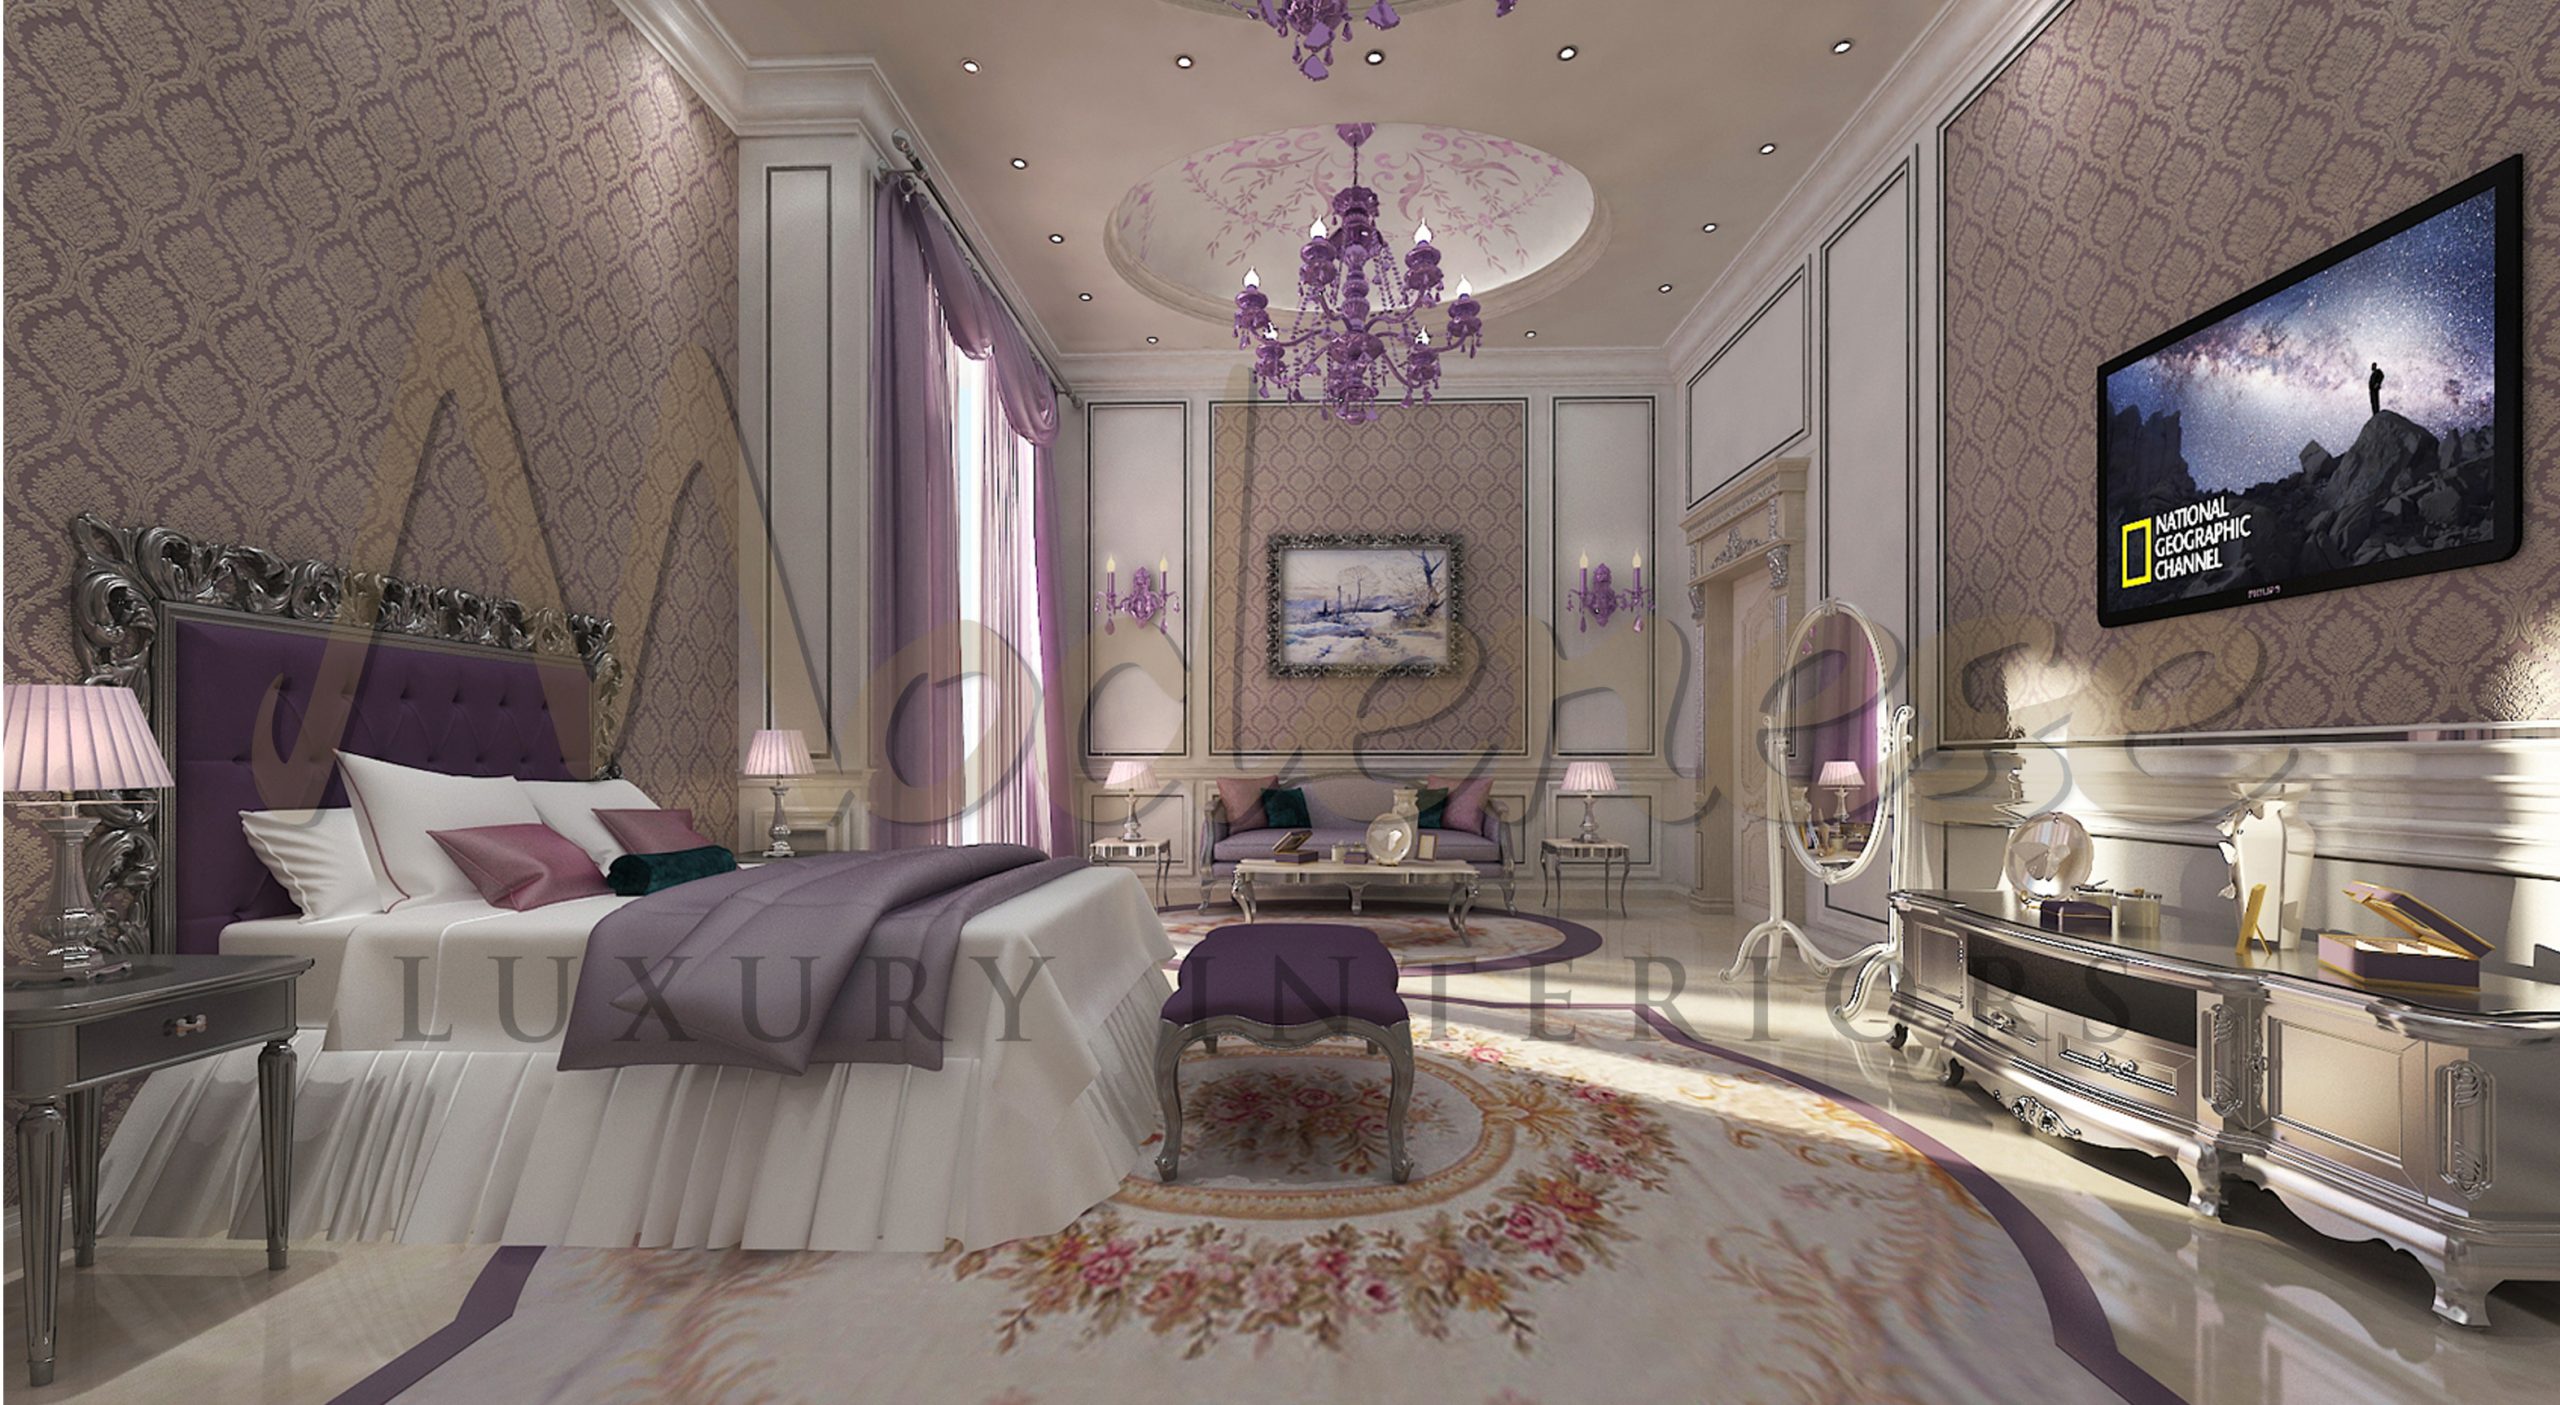 Mobilier de luxe classique pour la décoration intérieure d'une villa à Riyadh, Arabie Saoudite